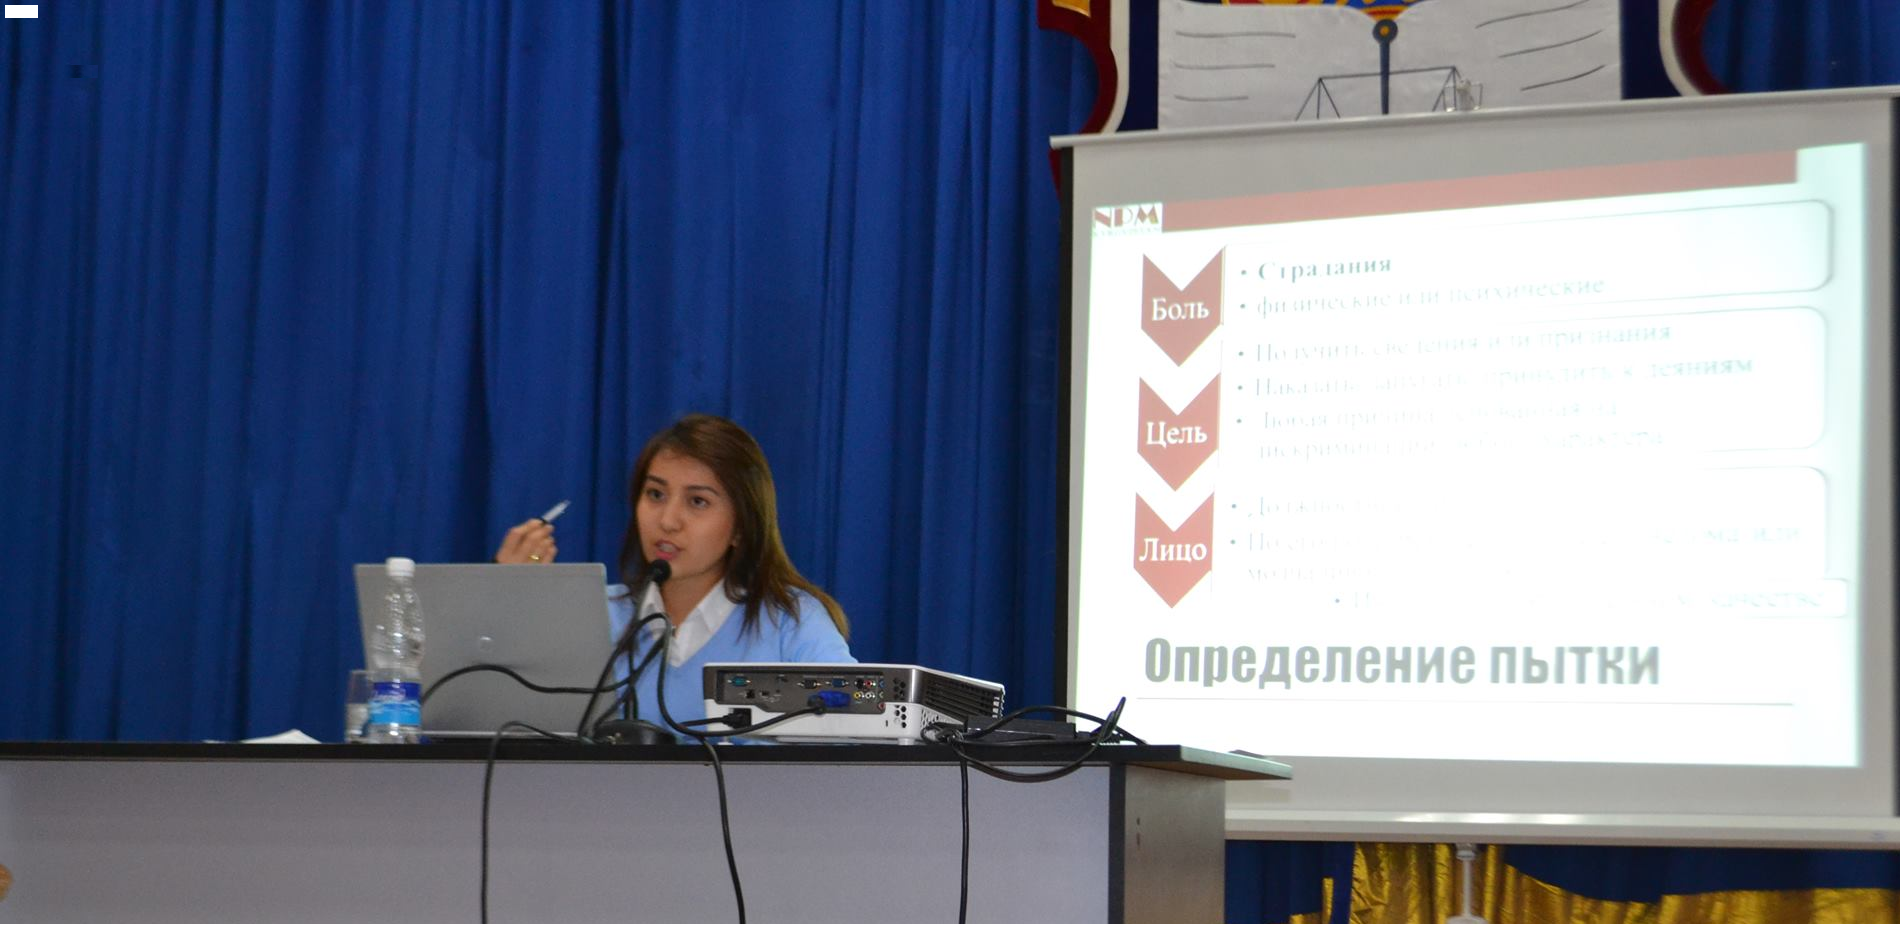 Национальный центр прочитал лекцию для курсантов Академии МВД